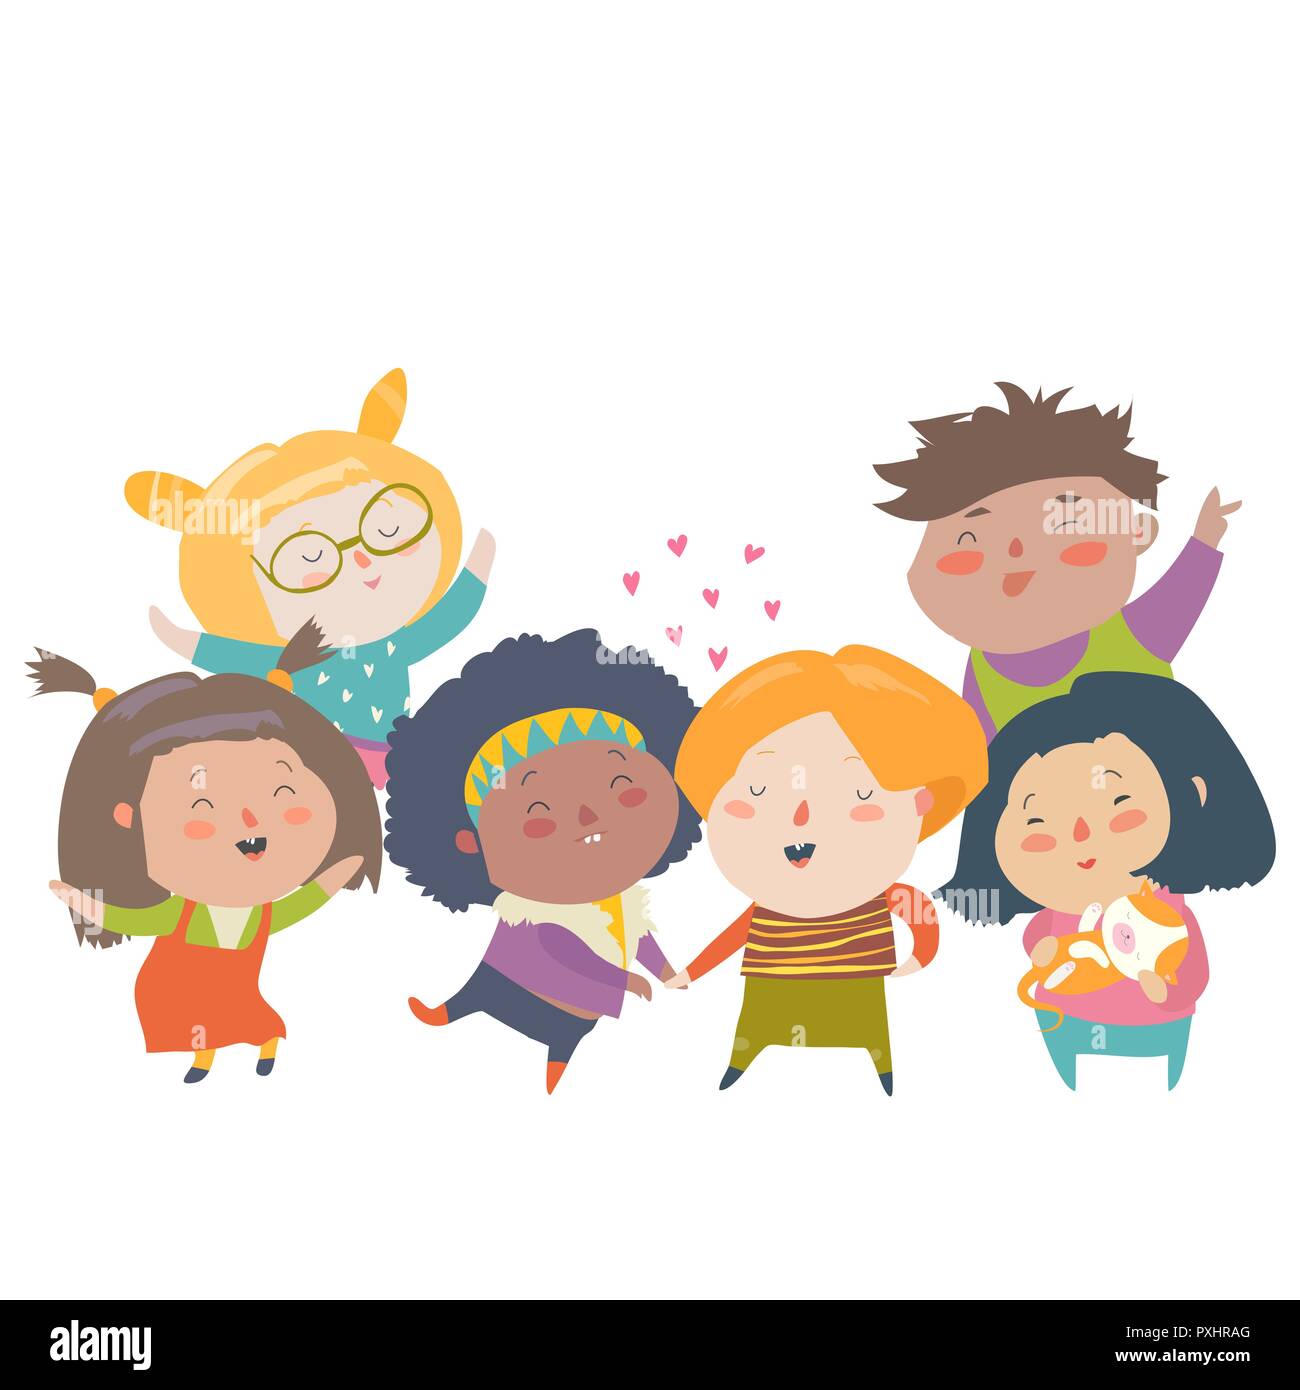 Groupe d'enfants de différentes nationalités et la couleur de la peau. La race de l'égalité, la tolérance, la diversité Illustration de Vecteur